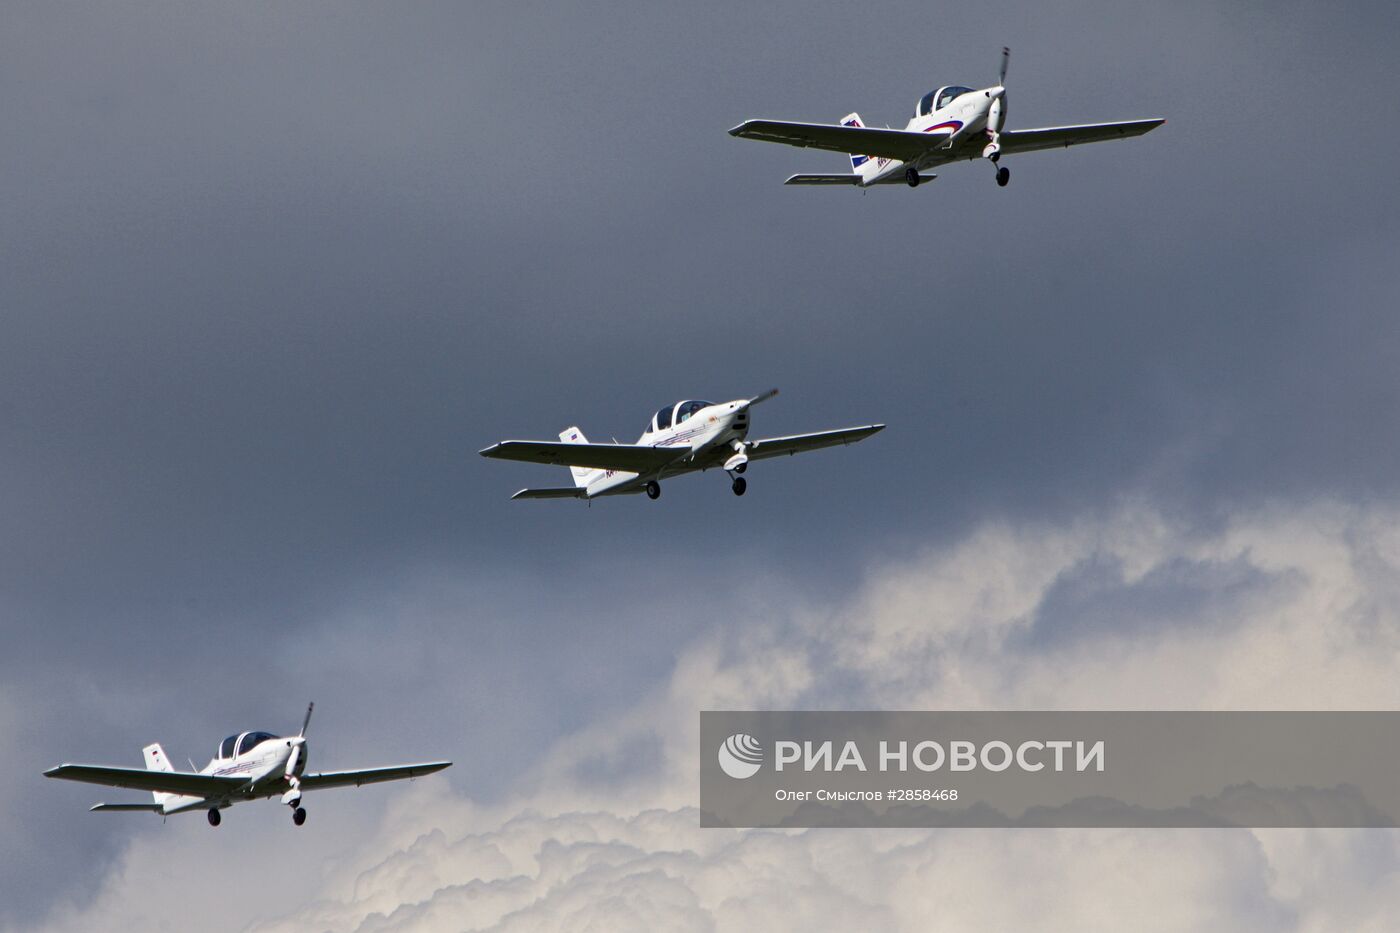 Авиасалон малой и региональной авиации "Авиарегион-2016" в Ярославской области